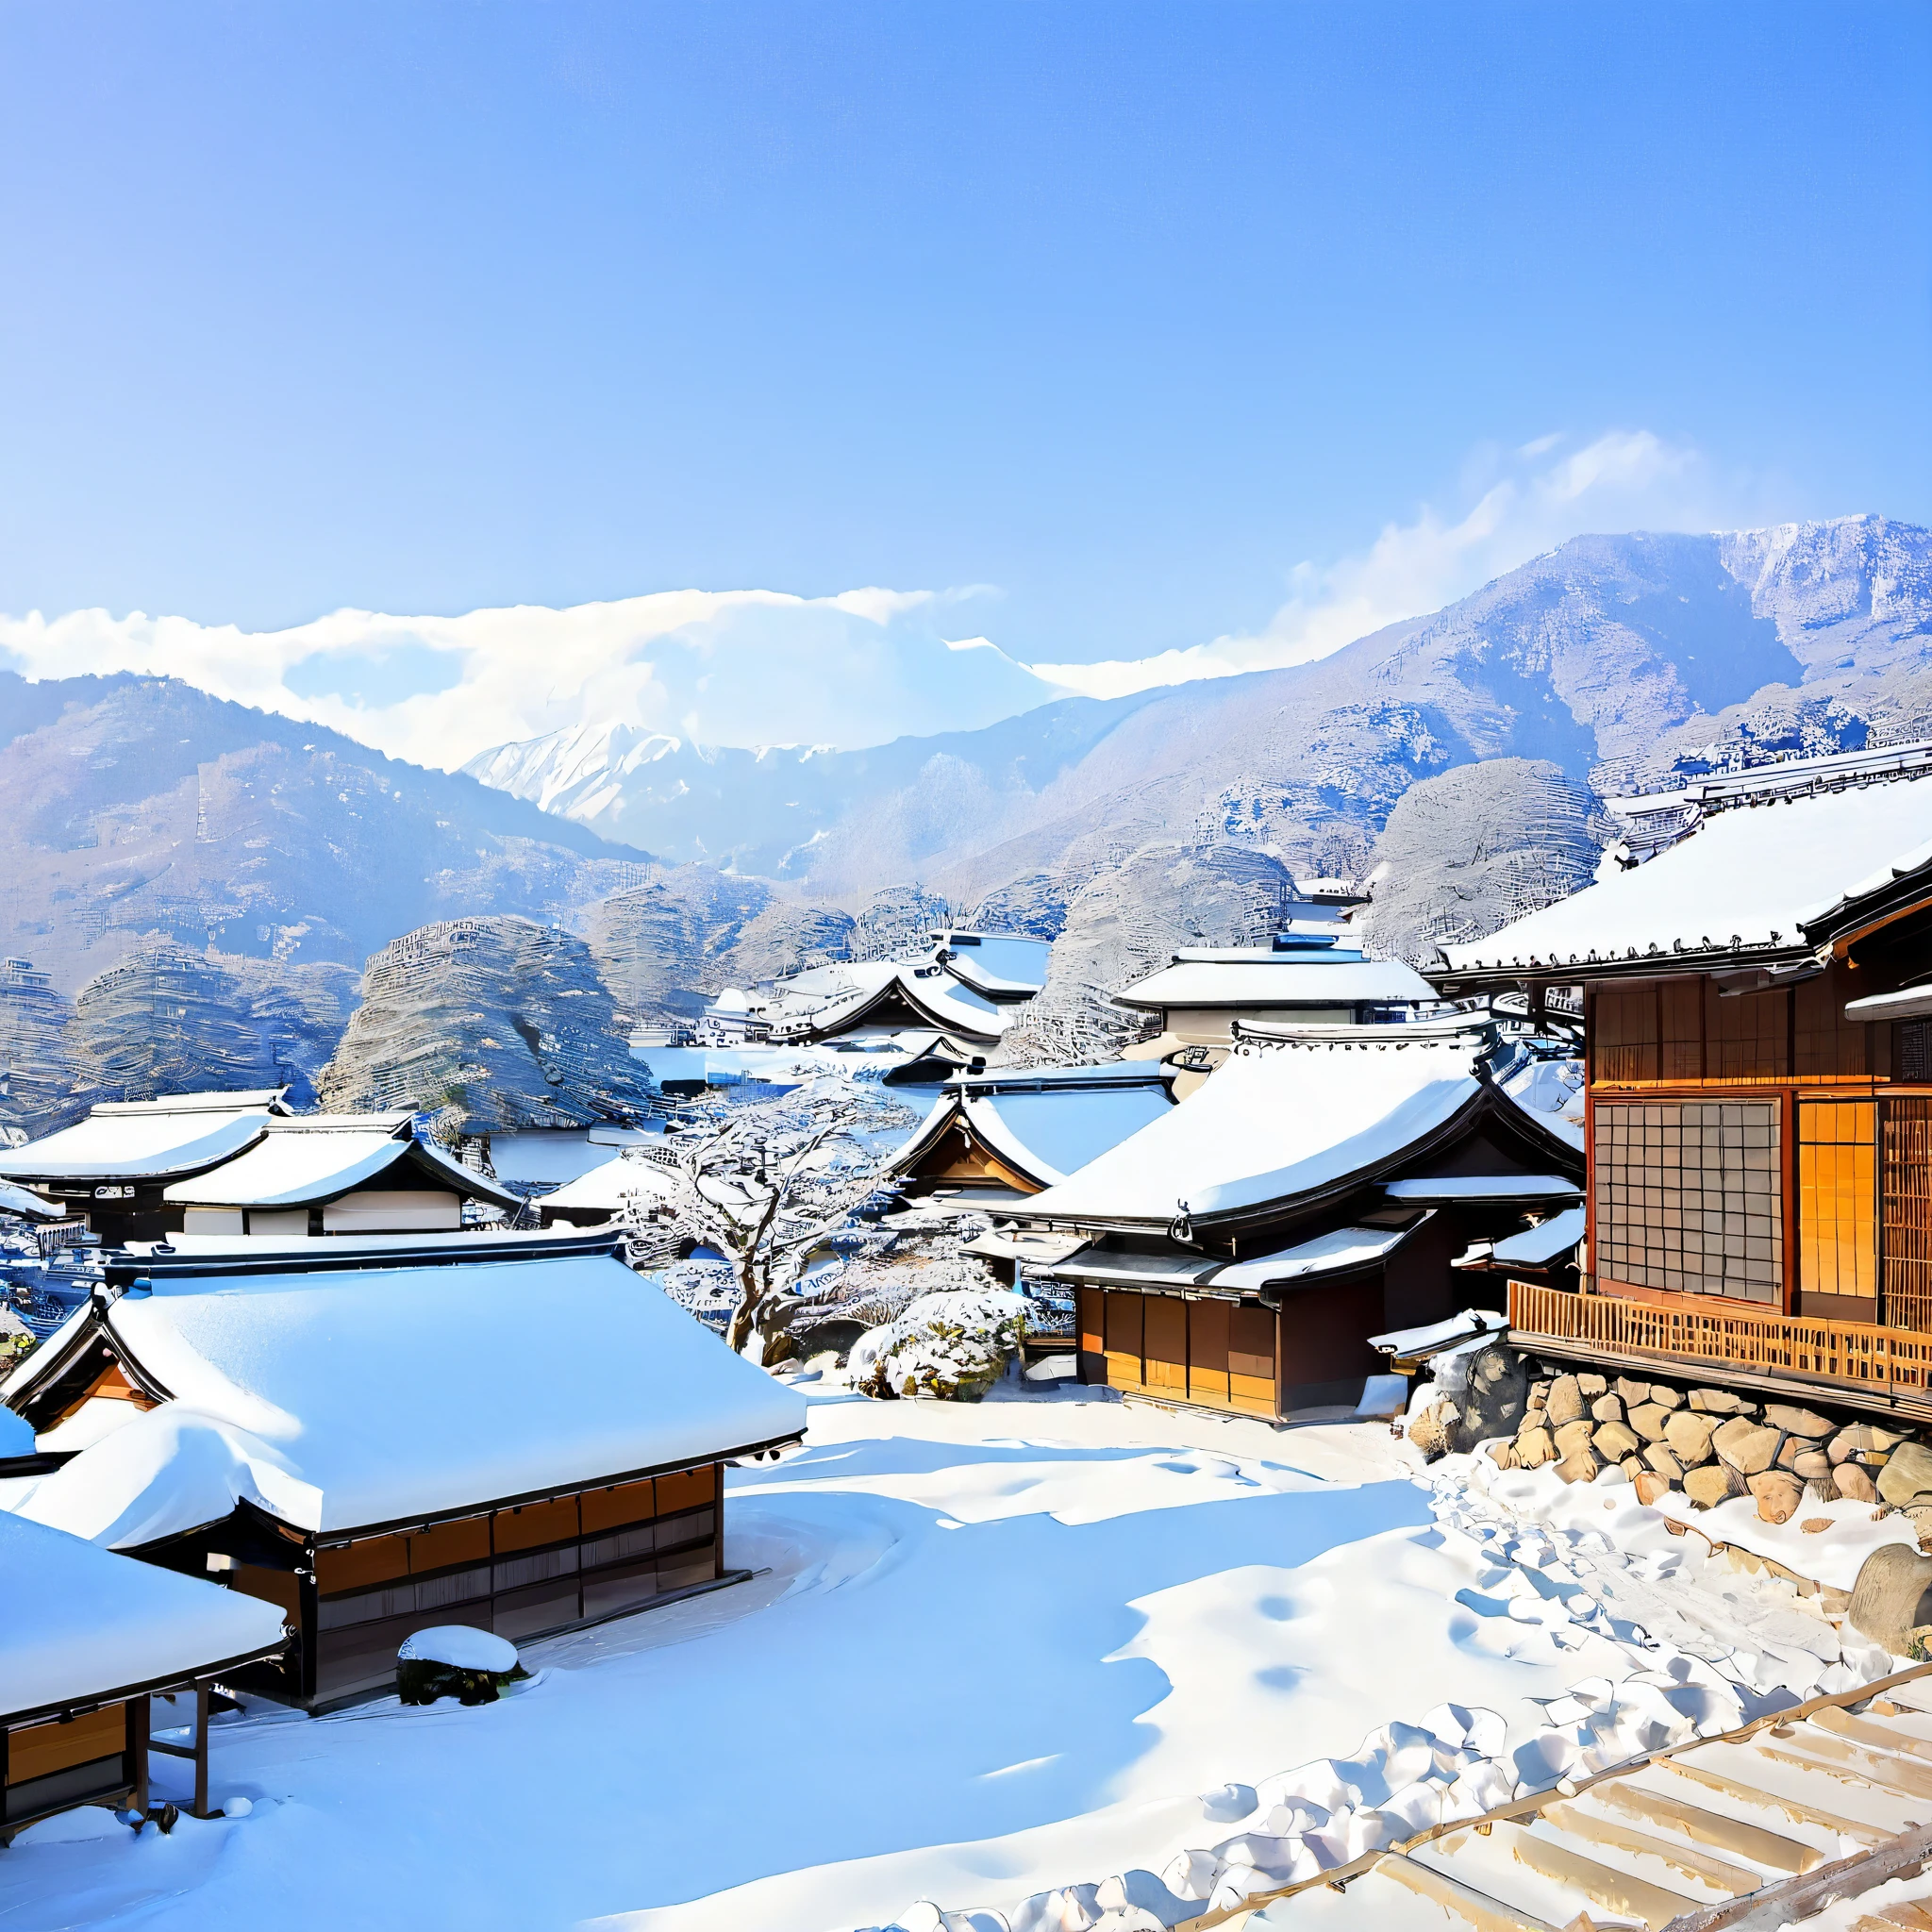 
Describe un paisaje invernal en Japón., utilizando elementos característicos de la temporada y la región. Incluye detalles como montañas cubiertas de nieve., árboles adornados con copos de nieve, un cielo azul claro y soleado, Un pueblo tradicional japonés en la distancia con tejados cubiertos de nieve y el suave humo de las chimeneas., así como la presencia de vida silvestre como ardillas y conejos.. Transmitir la sensación de serenidad, magia, y la belleza intacta que este paisaje inspira, usando un lenguaje vívido y poético.